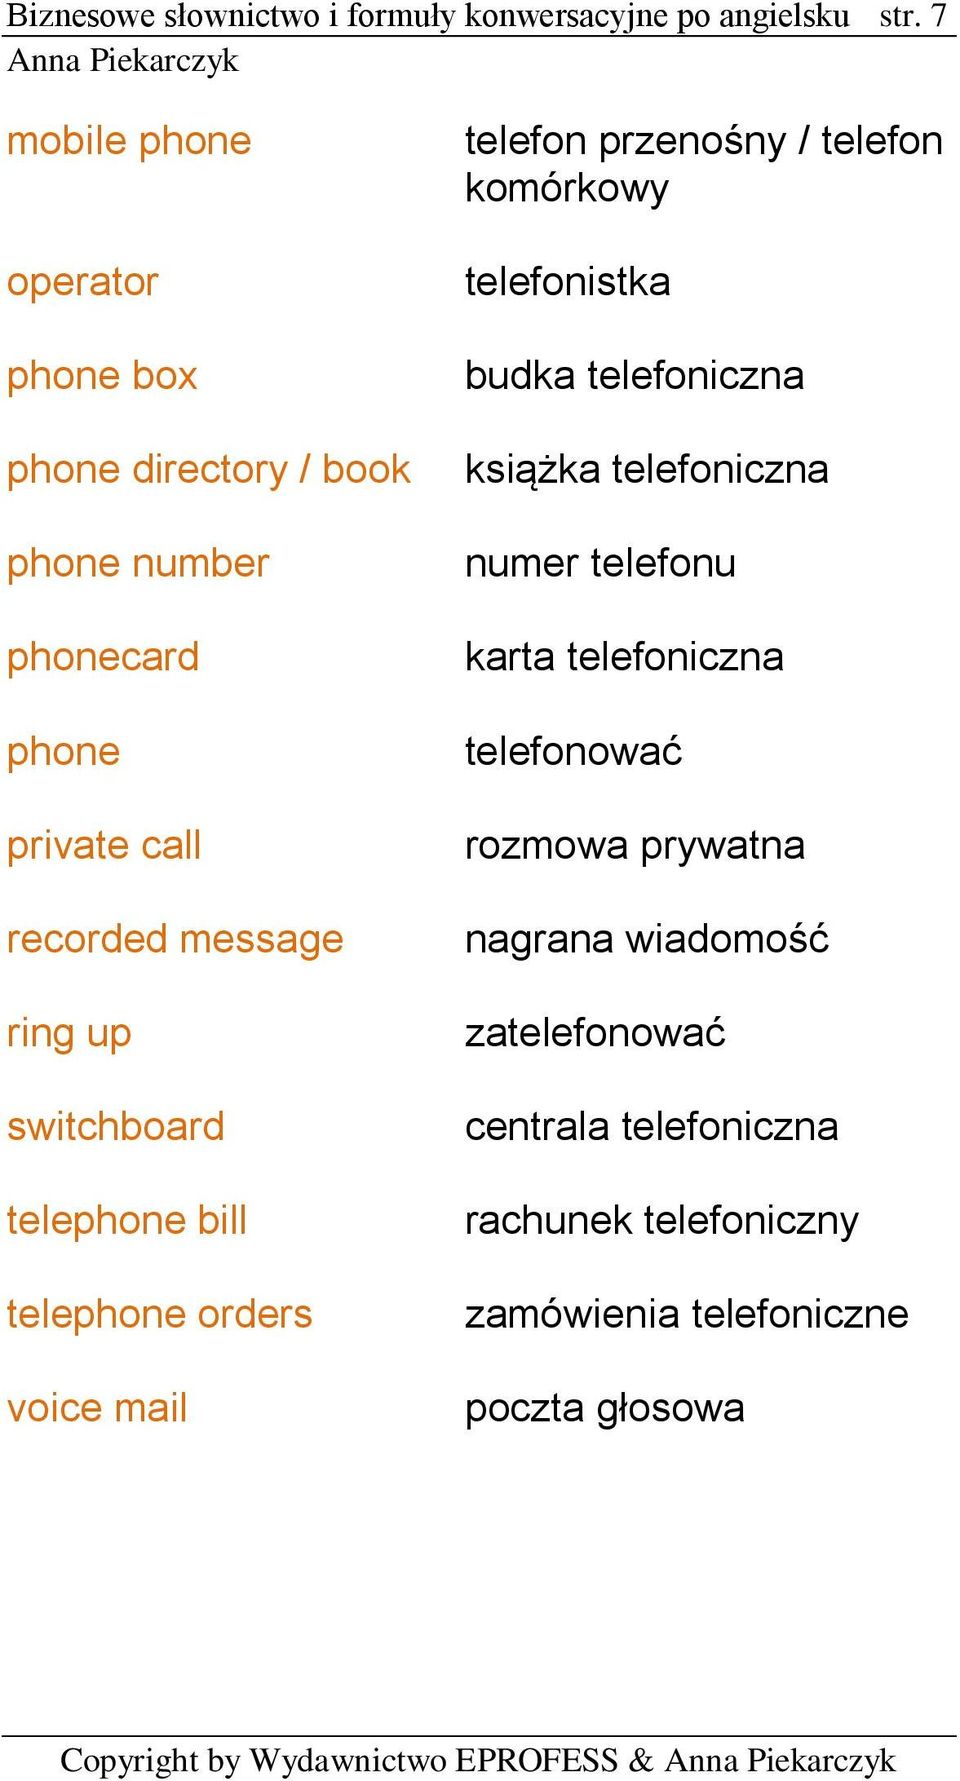 telephone bill telephone orders voice mail telefon przenośny / telefon komórkowy telefonistka budka telefoniczna książka telefoniczna